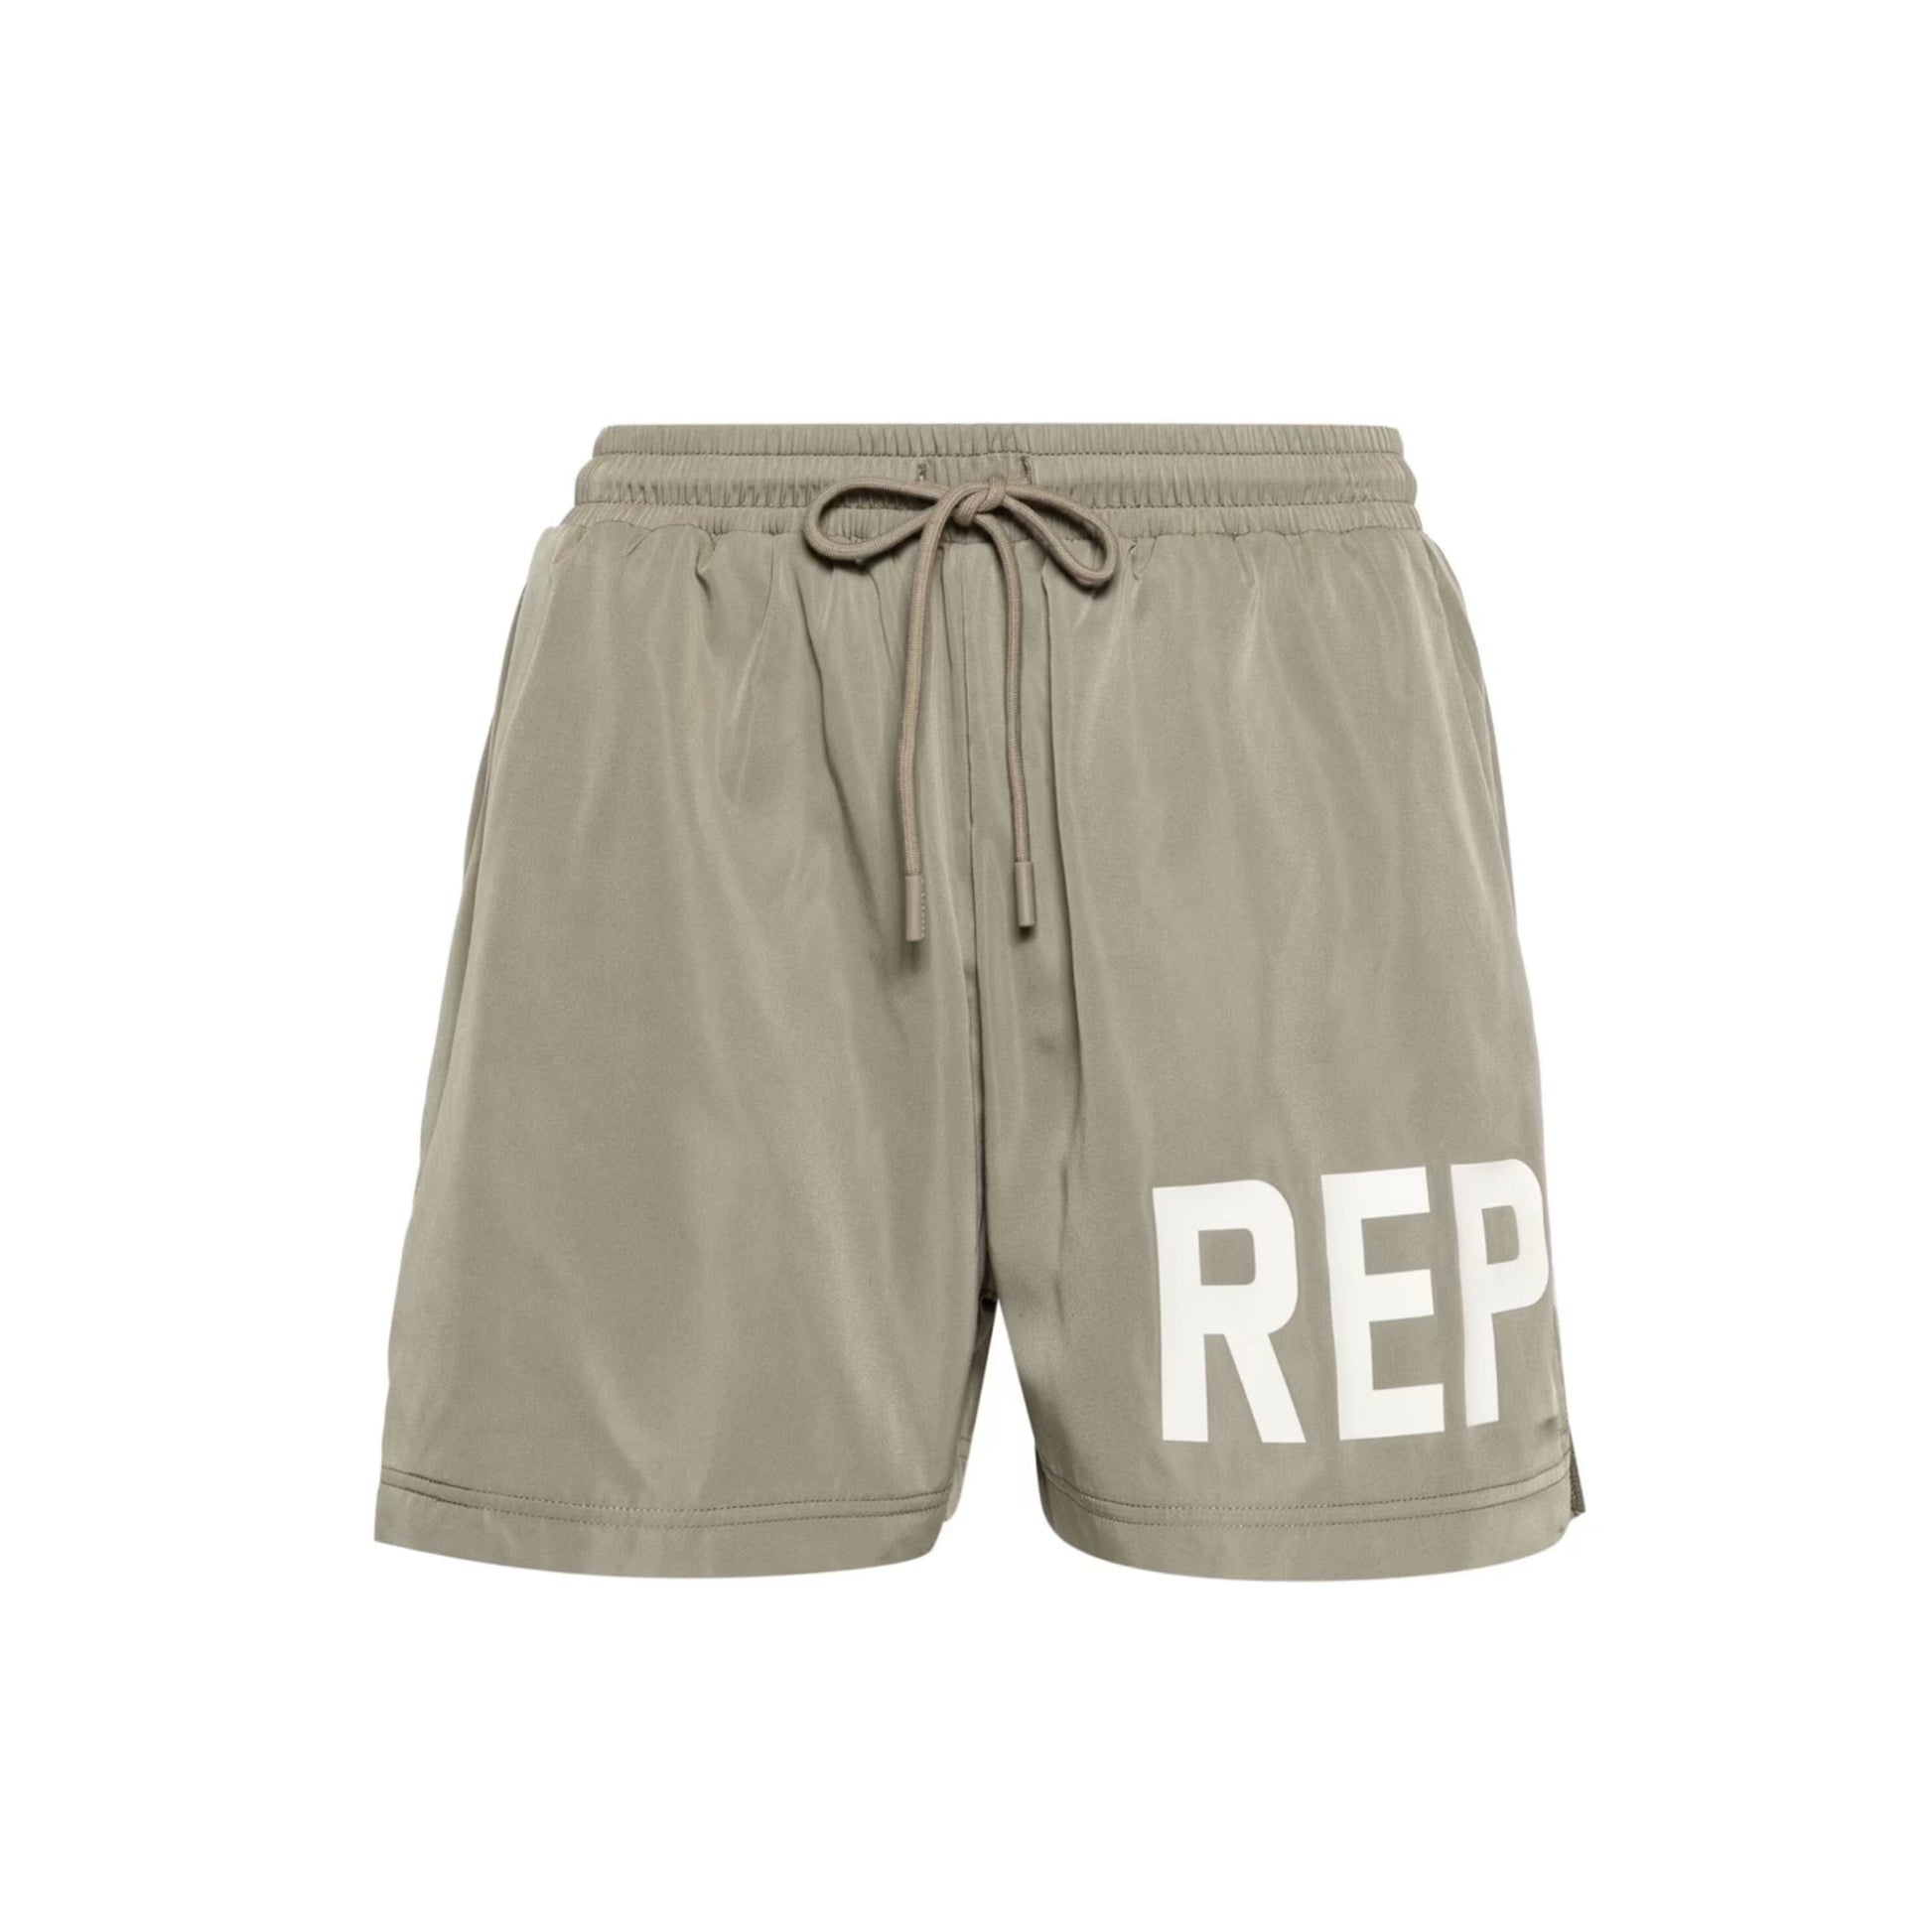 Represent Swim Short - 168 Khaki - Escape Menswear